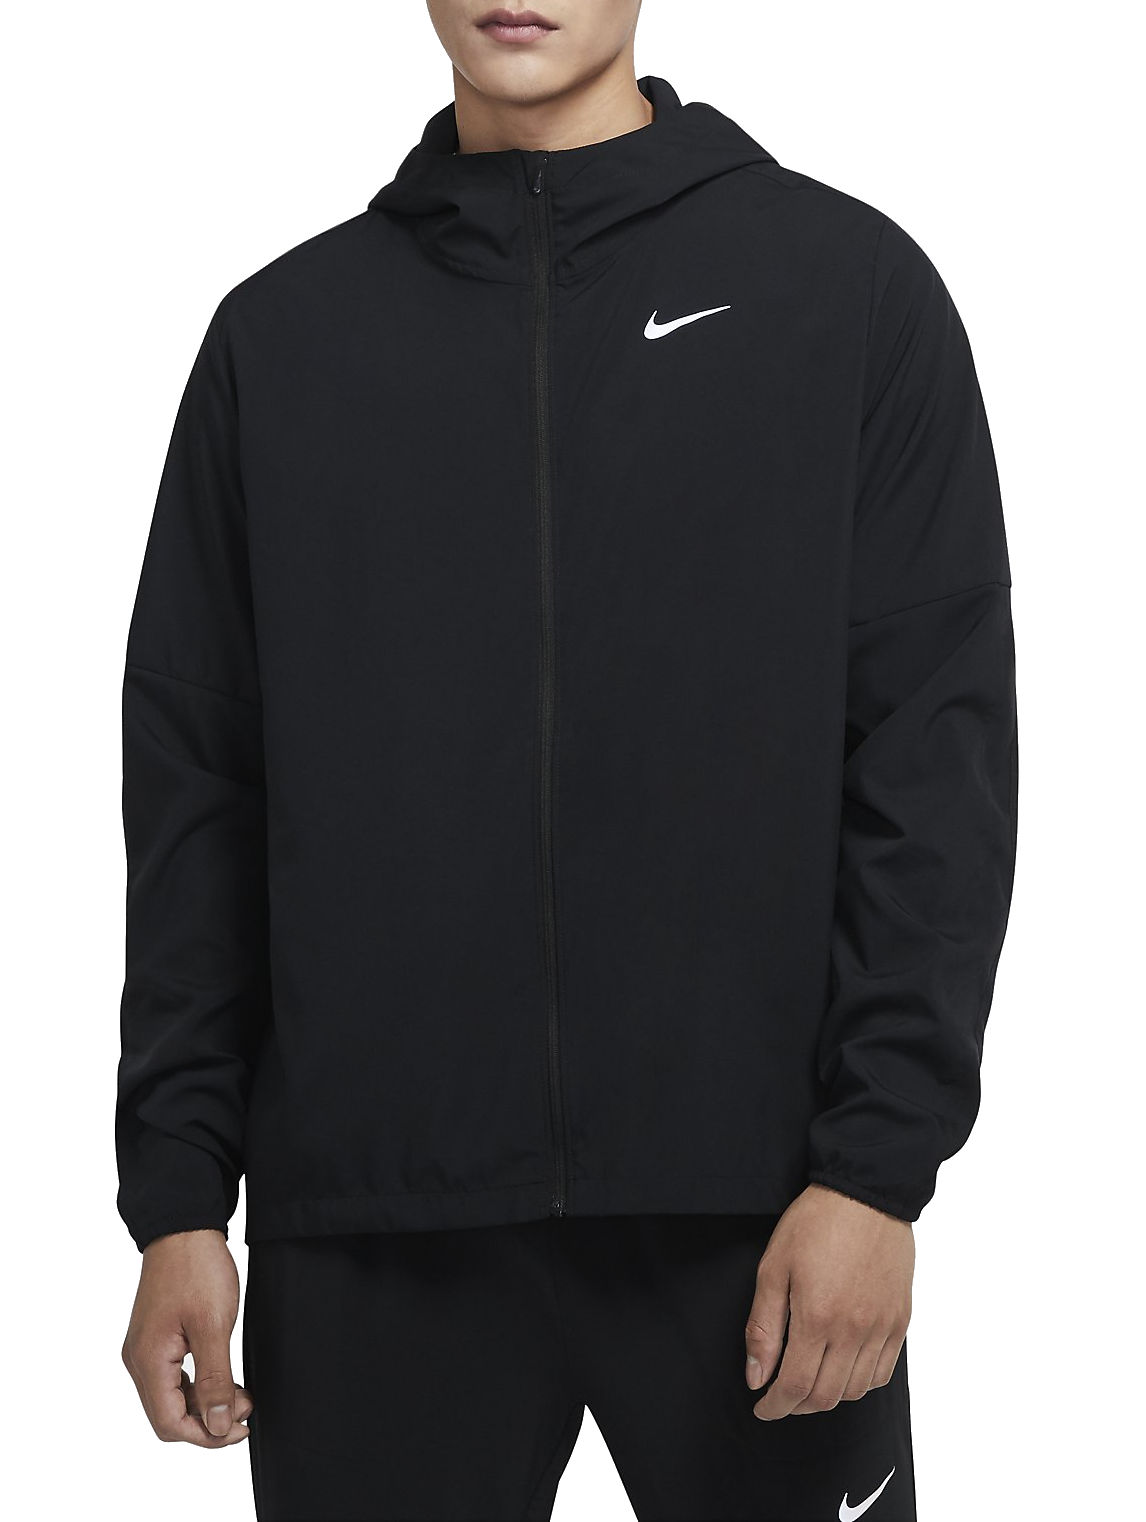 Pánská běžecká bunda s kapucí Nike Run Stripe